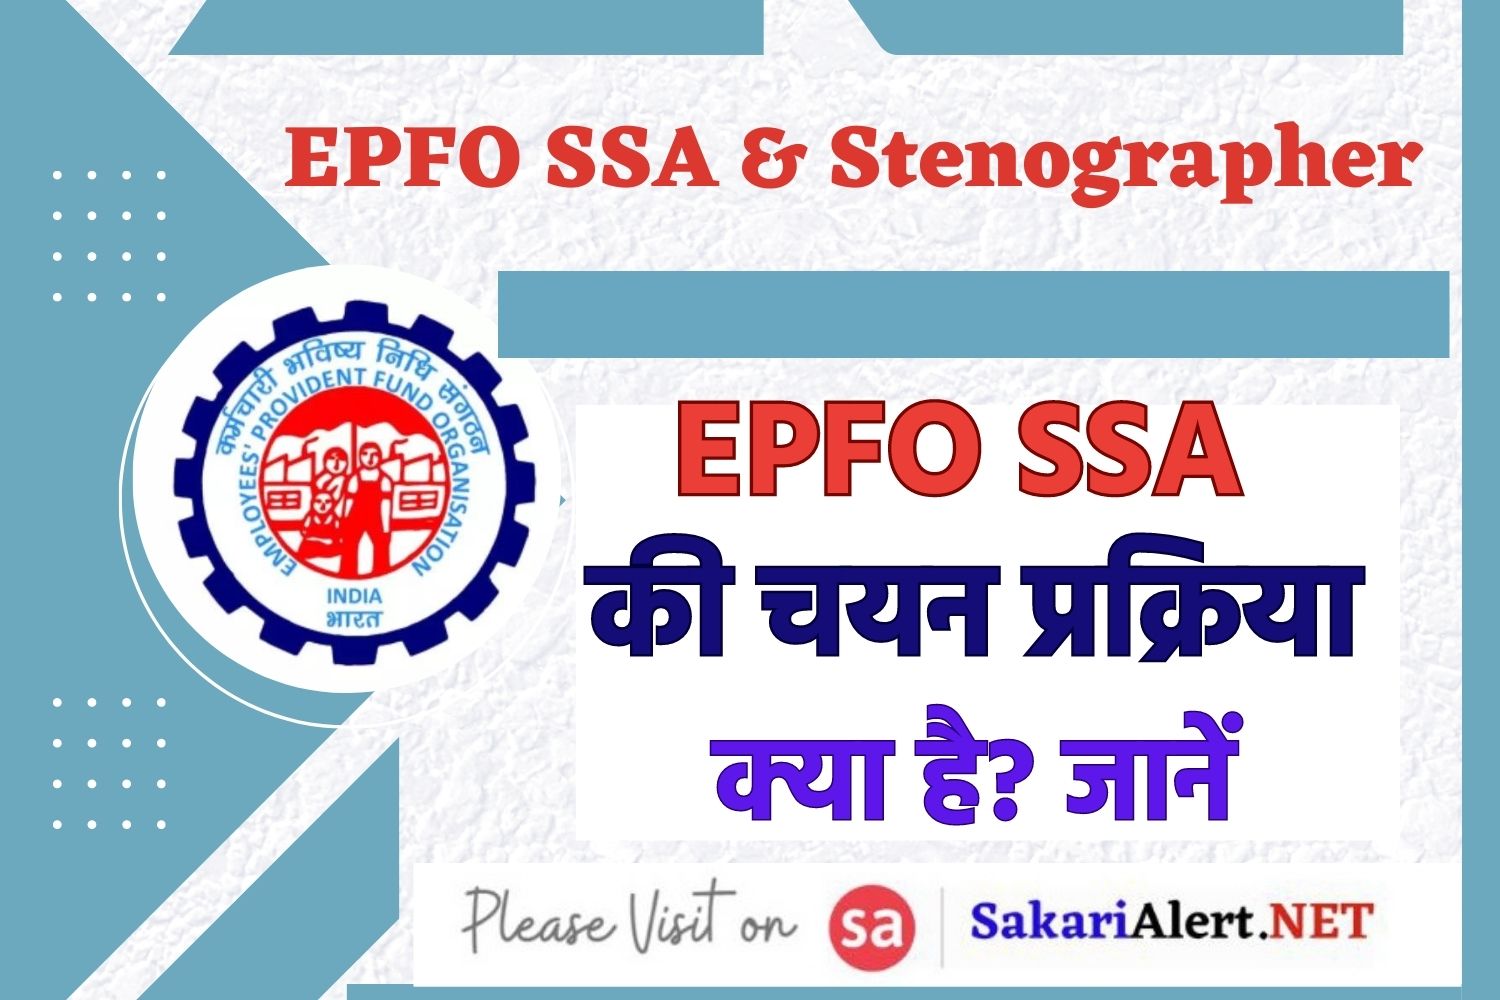 EPFO SSA Selection Process: EPFO SSA की चयन प्रक्रिया क्या है? जानें